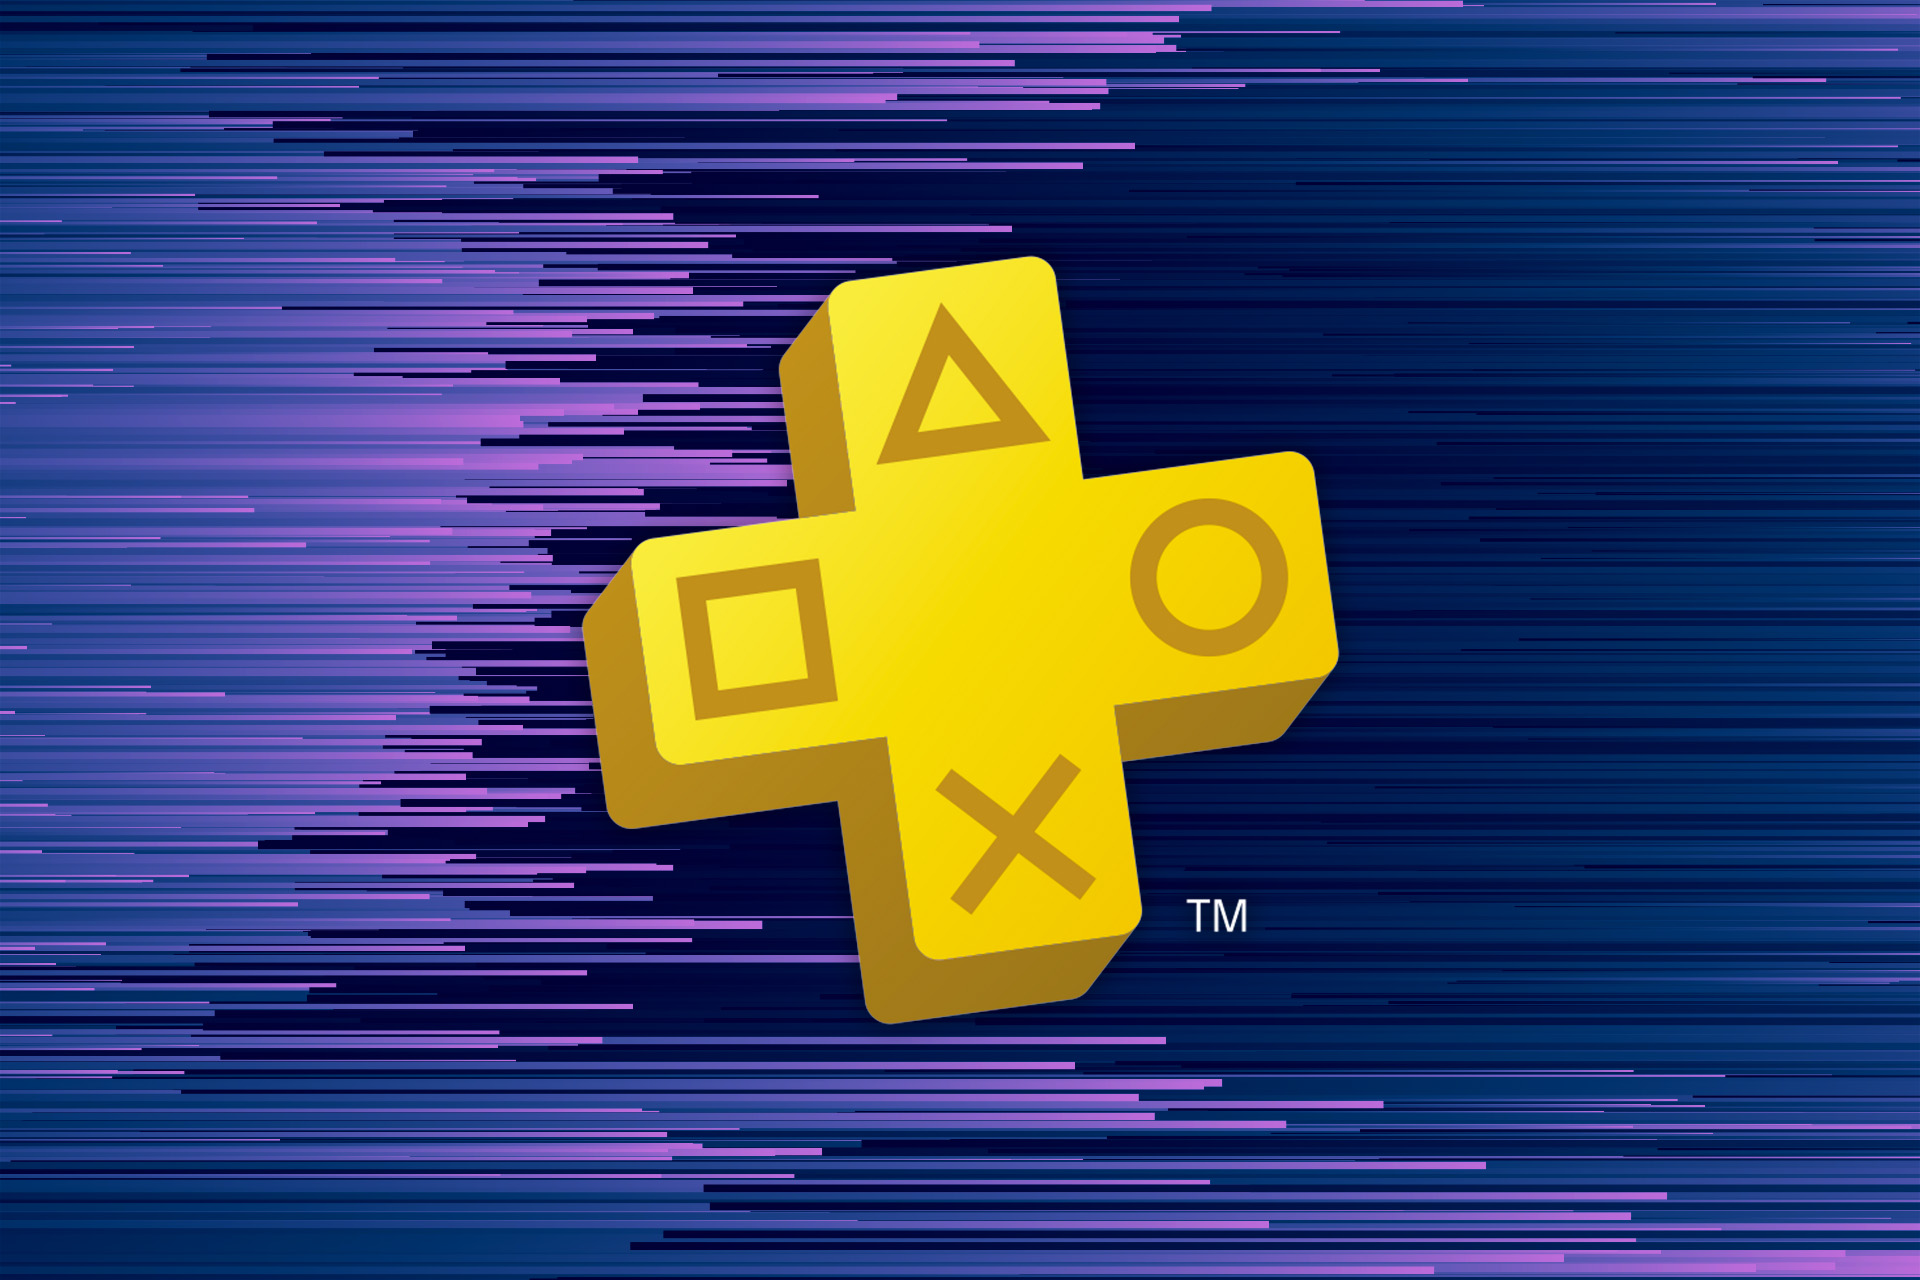 PlayStation Plus-logotypen (ett plustecken med PlayStation-former) på en lila-blå bakgrund